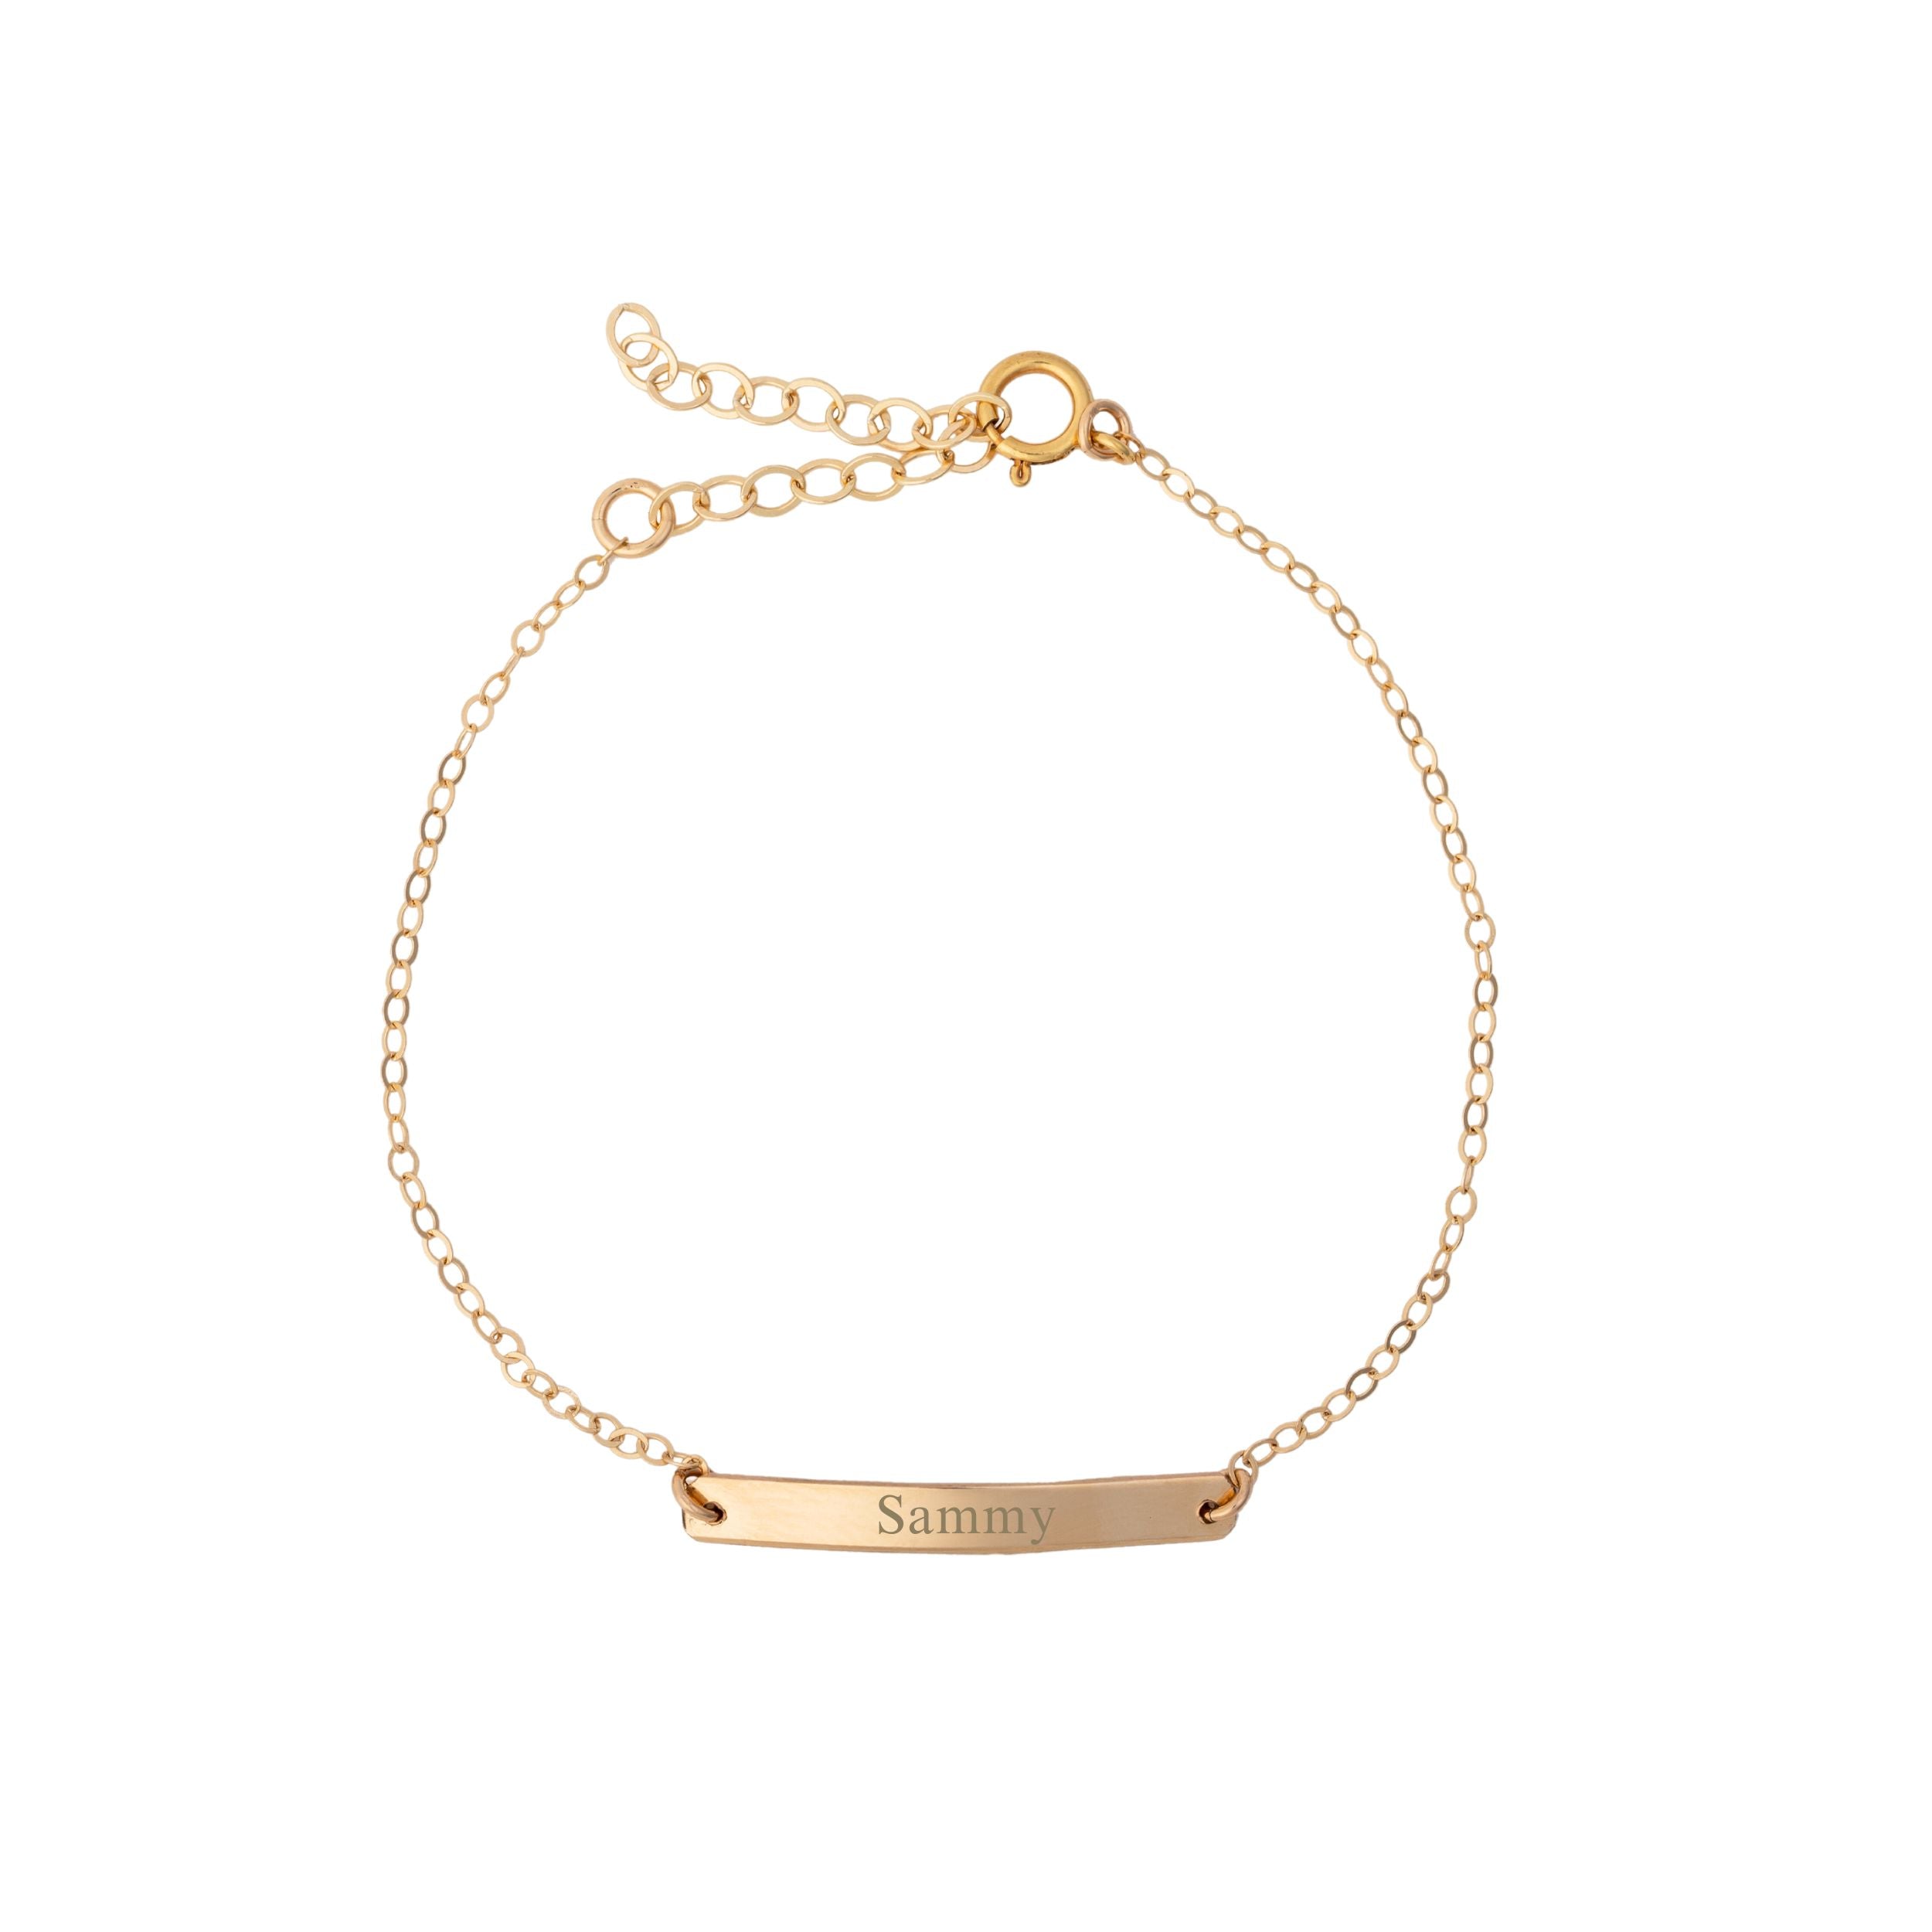 Gold Bar Bracelet - Bar Bracelet - Name Engraved Bracelet - GOLD - ROSEGOLD  - SILVER - Bridesmaid Jewelry - Nameplate Bracelet - Valentines Day